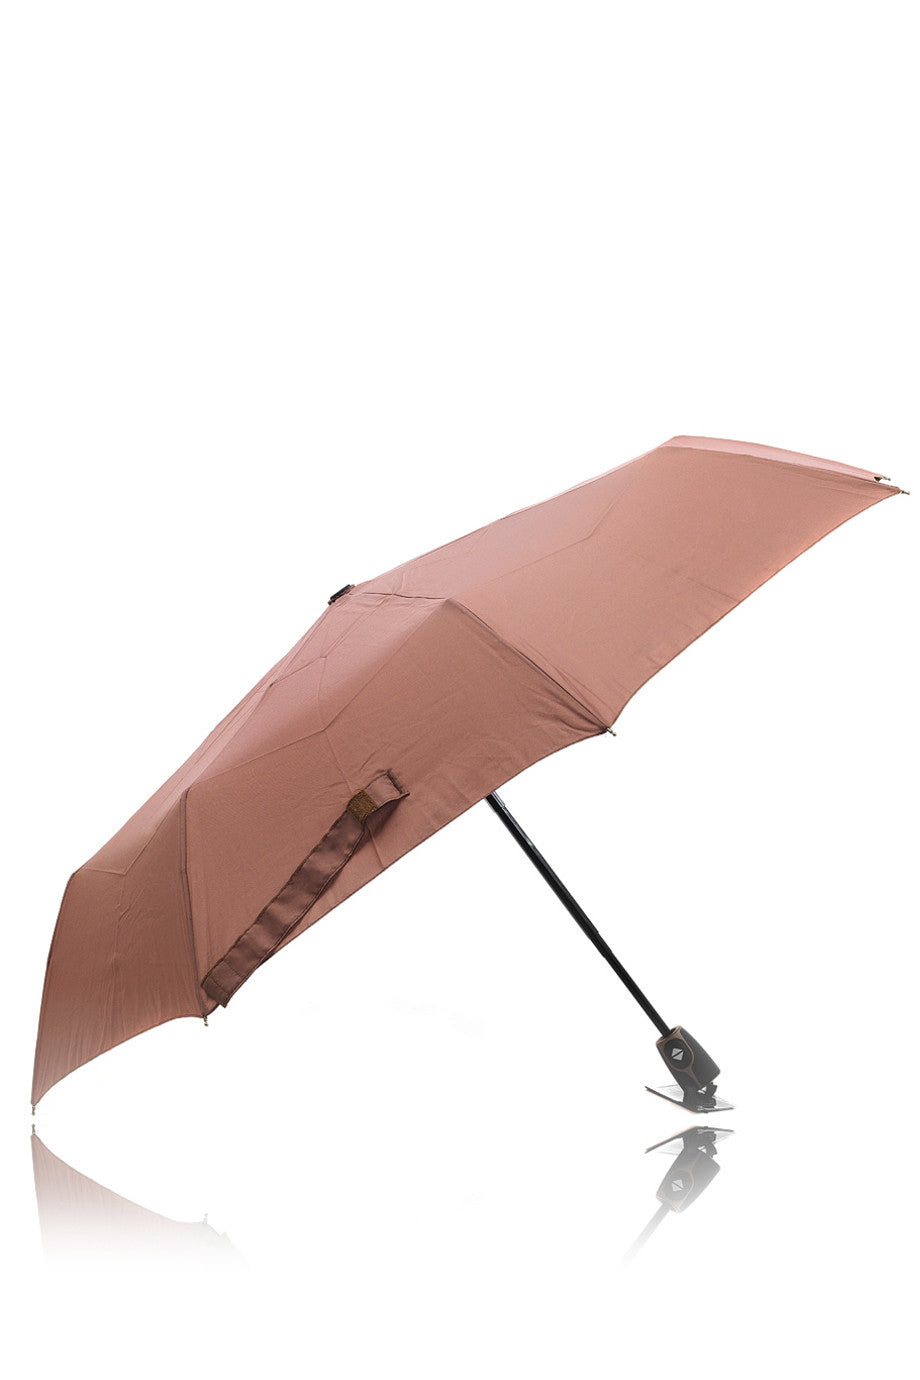 DOPPLER UNI Magic Fiber Umbrella – PRET-A-BEAUTE